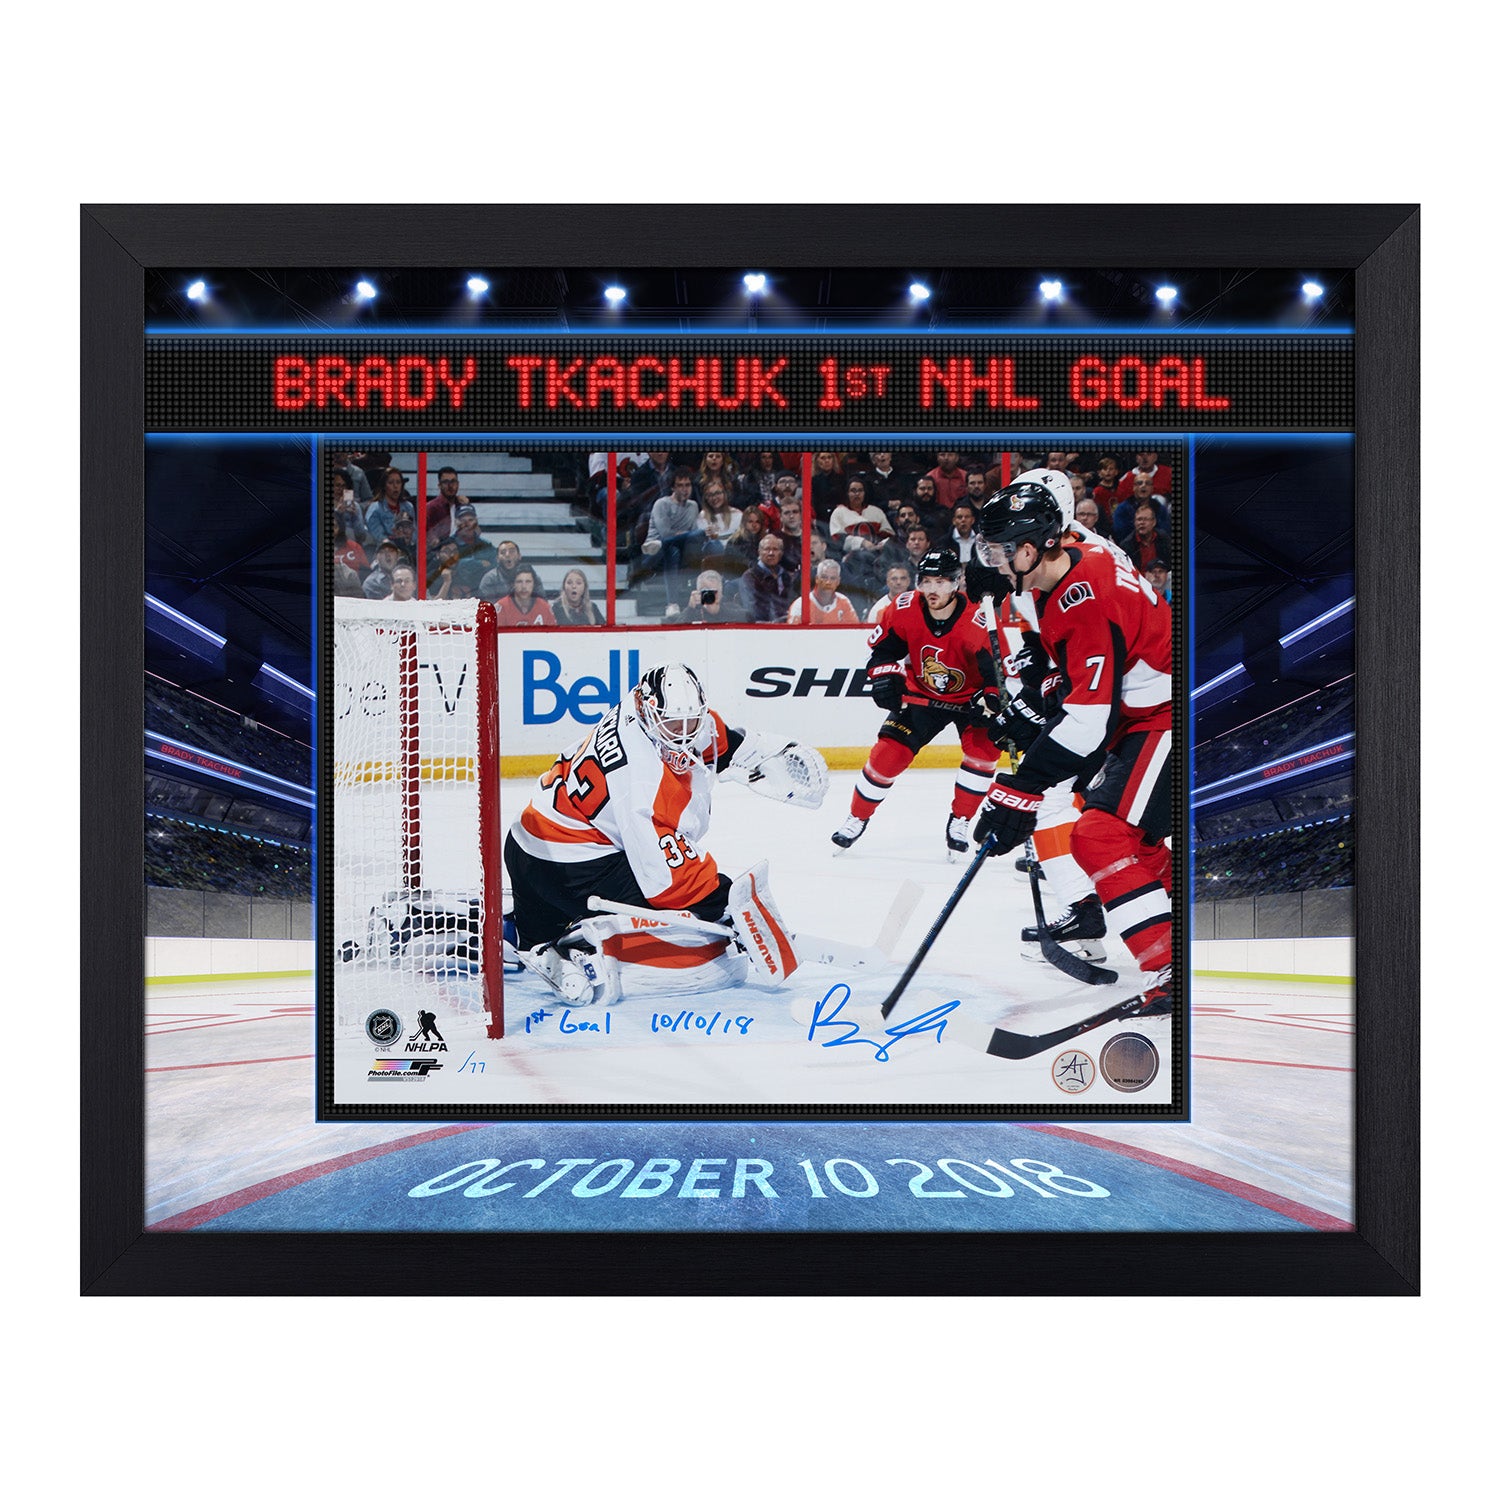 Brady Tkachuk Ottawa Senators Signed & Dated 1st Goal Graphic 19x23 Frame #/77